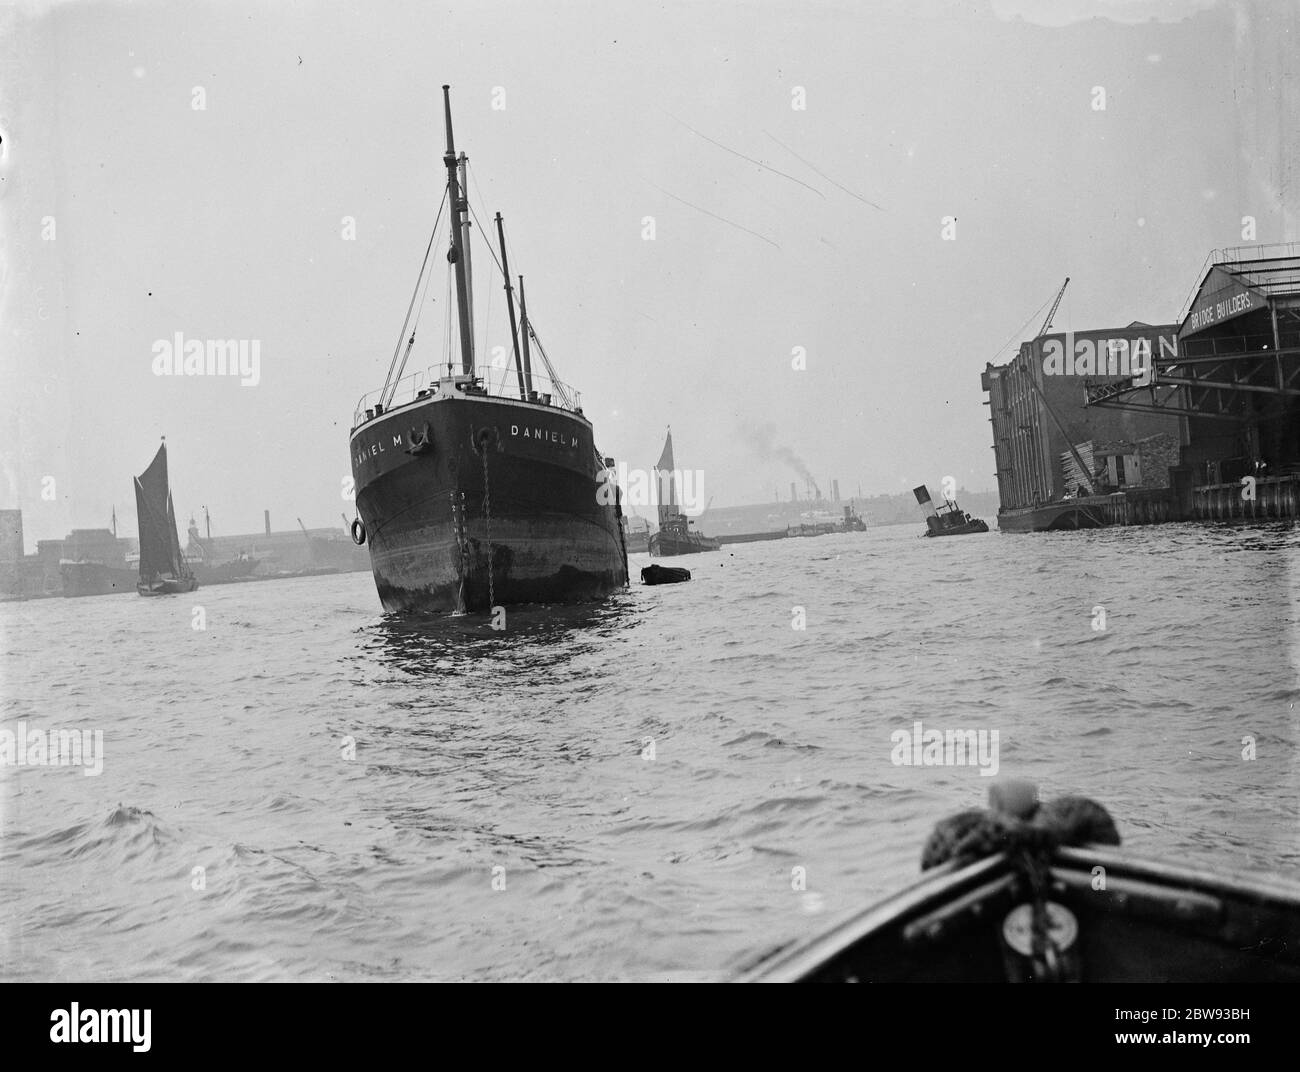 Der Bug von "Daniel", ein Handelsschiff, nach einer Kollision mit dem Schlepper "Gusty", auf der Themse in Greenwich, London. Der teilweise versenkte Schlepper ist rechts im Bild zu sehen. 1939 Stockfoto